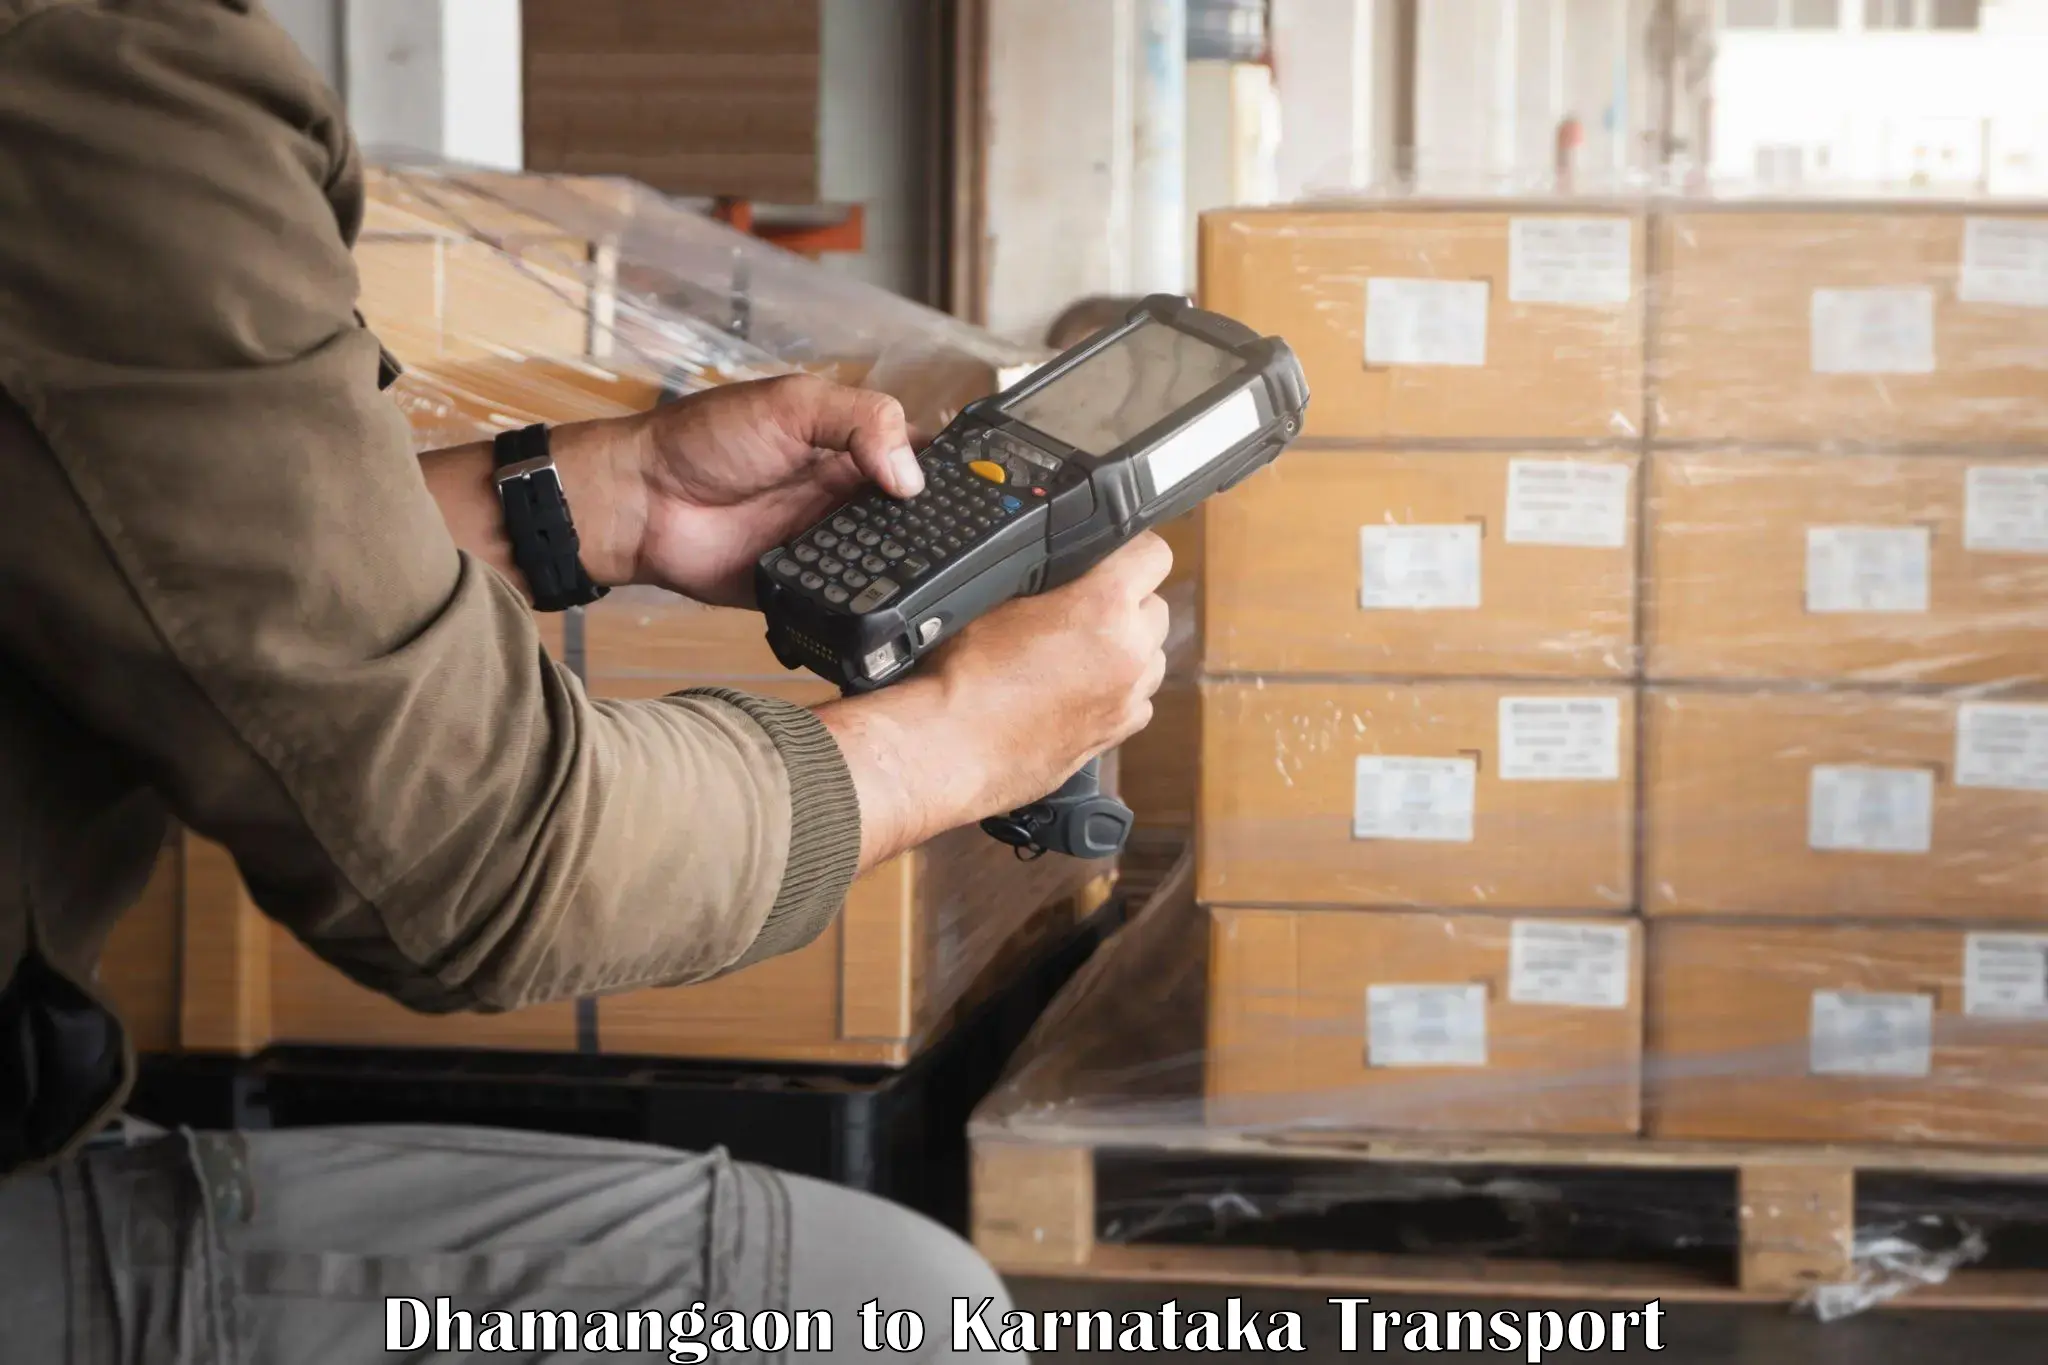 Nearby transport service Dhamangaon to Kanakapura